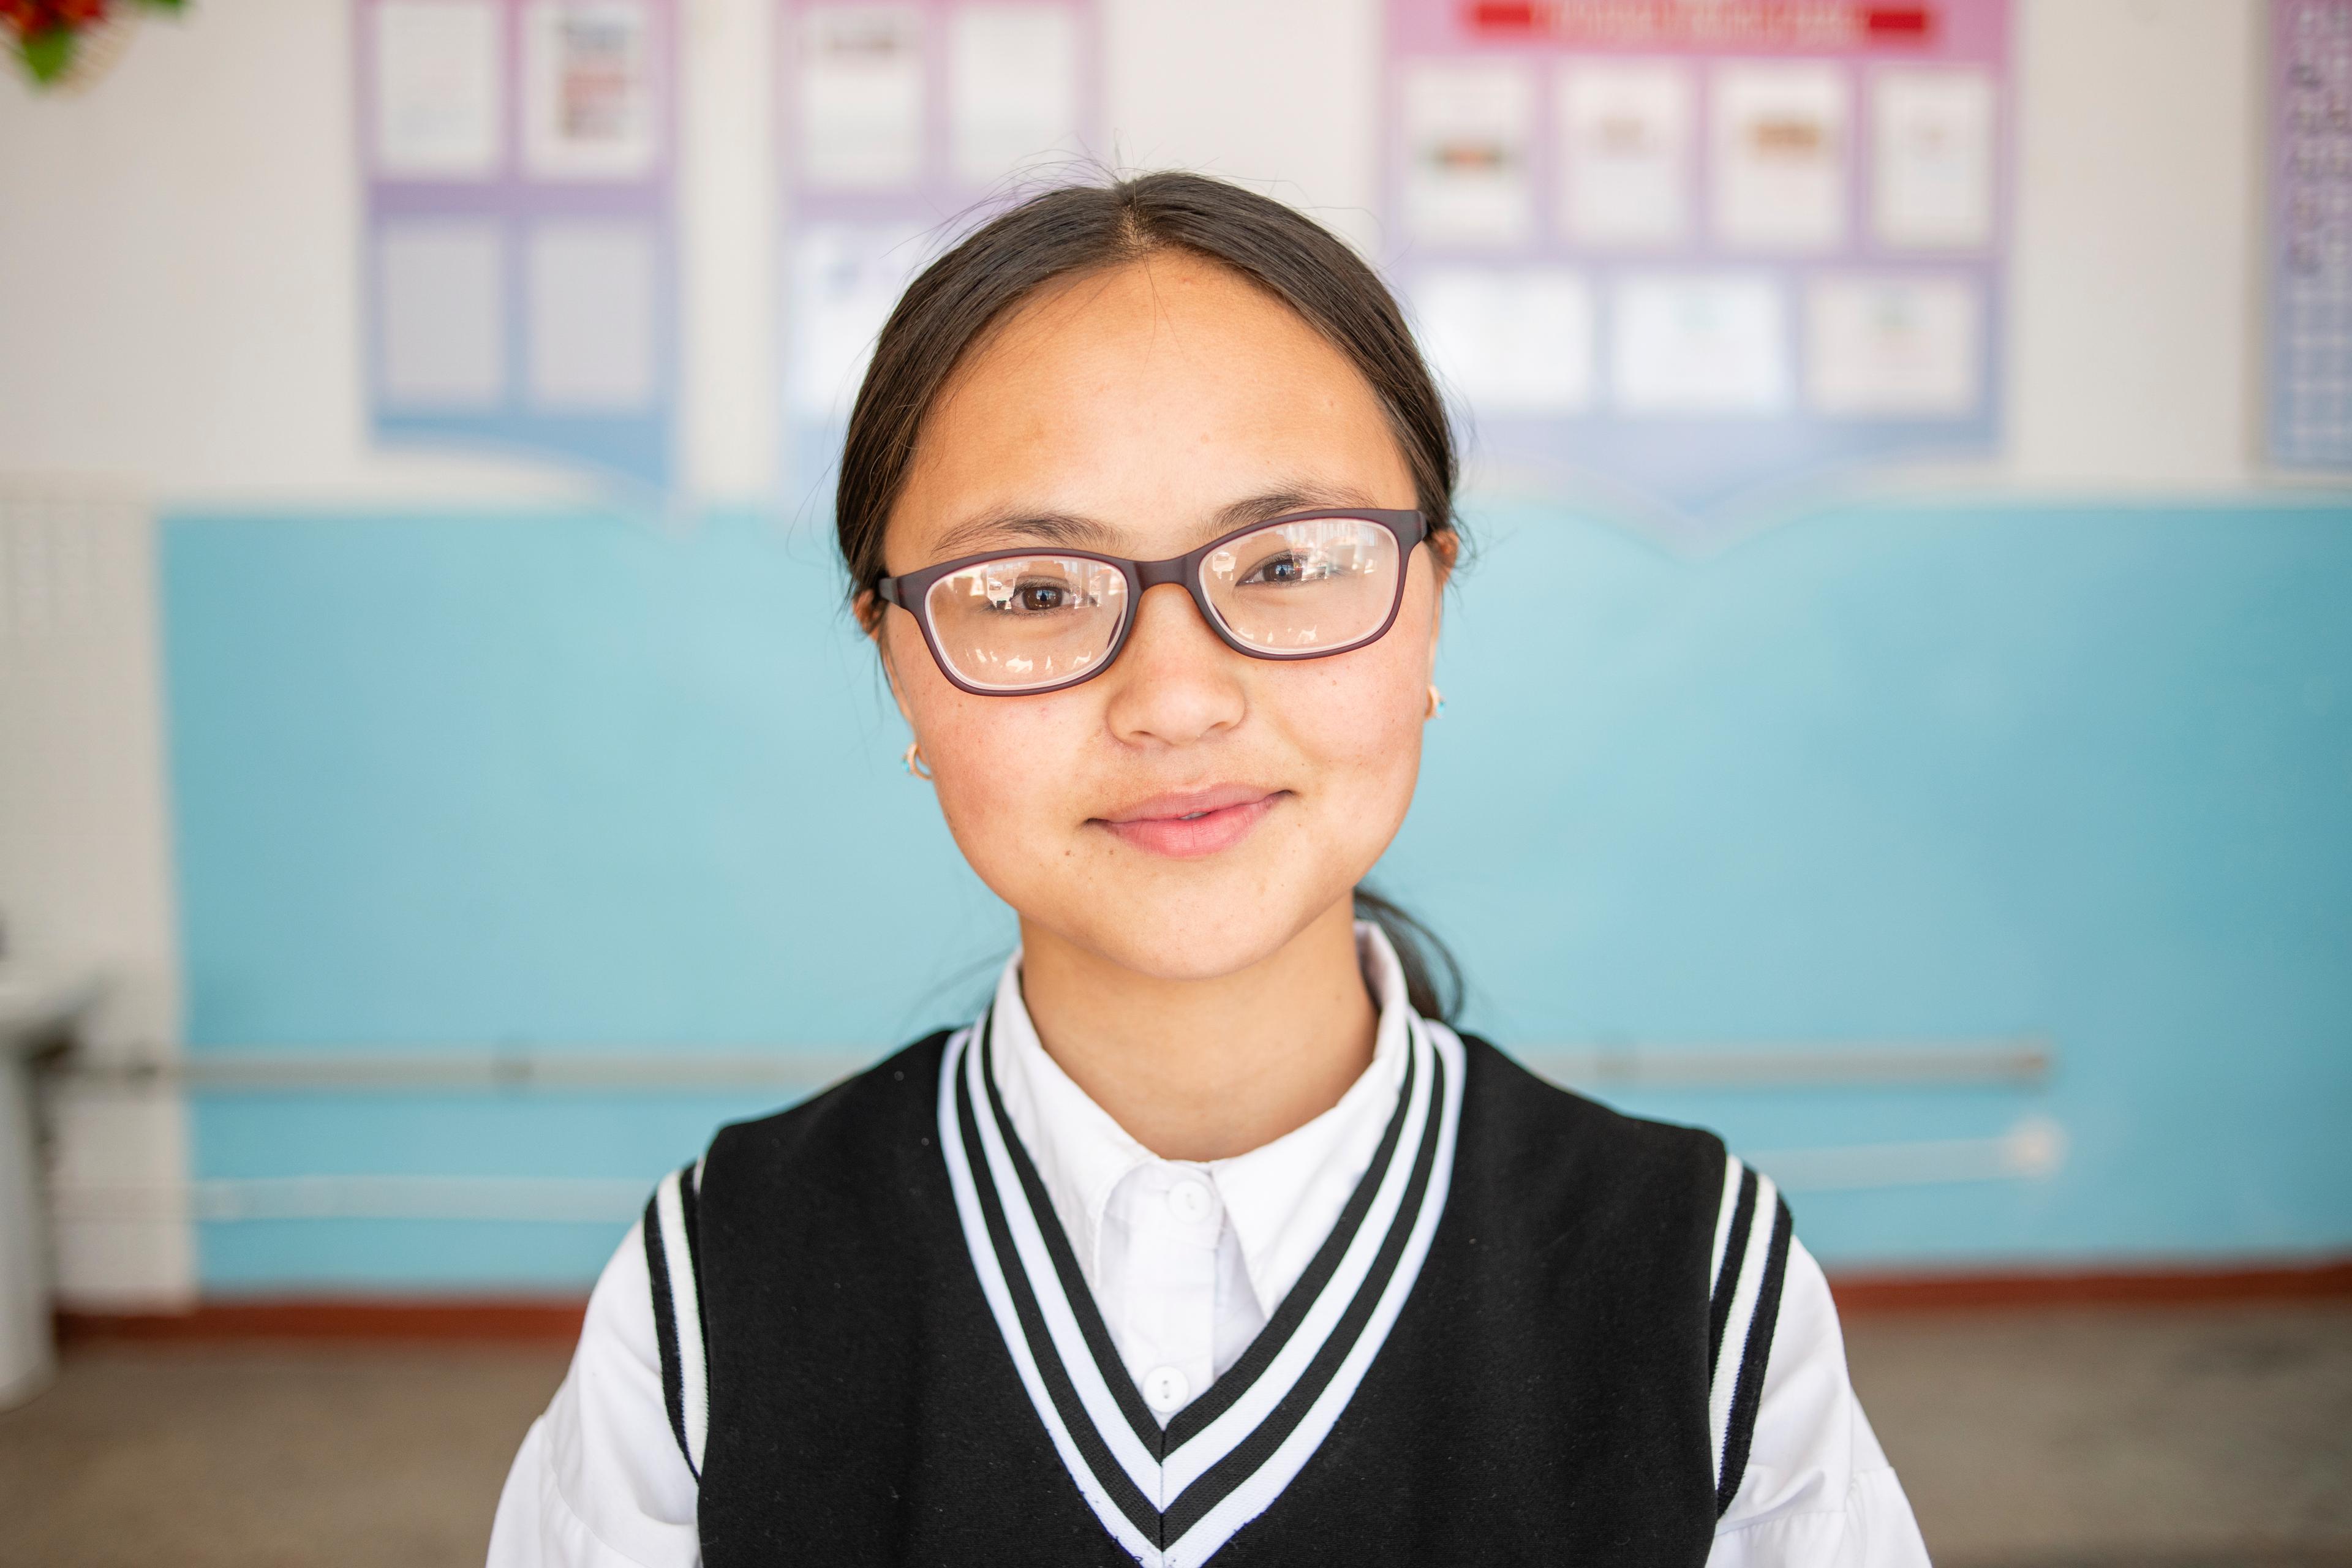 Die 15-jährige Schülerin Bernet Amatova trägt ihre neue Brille und lächelt. 